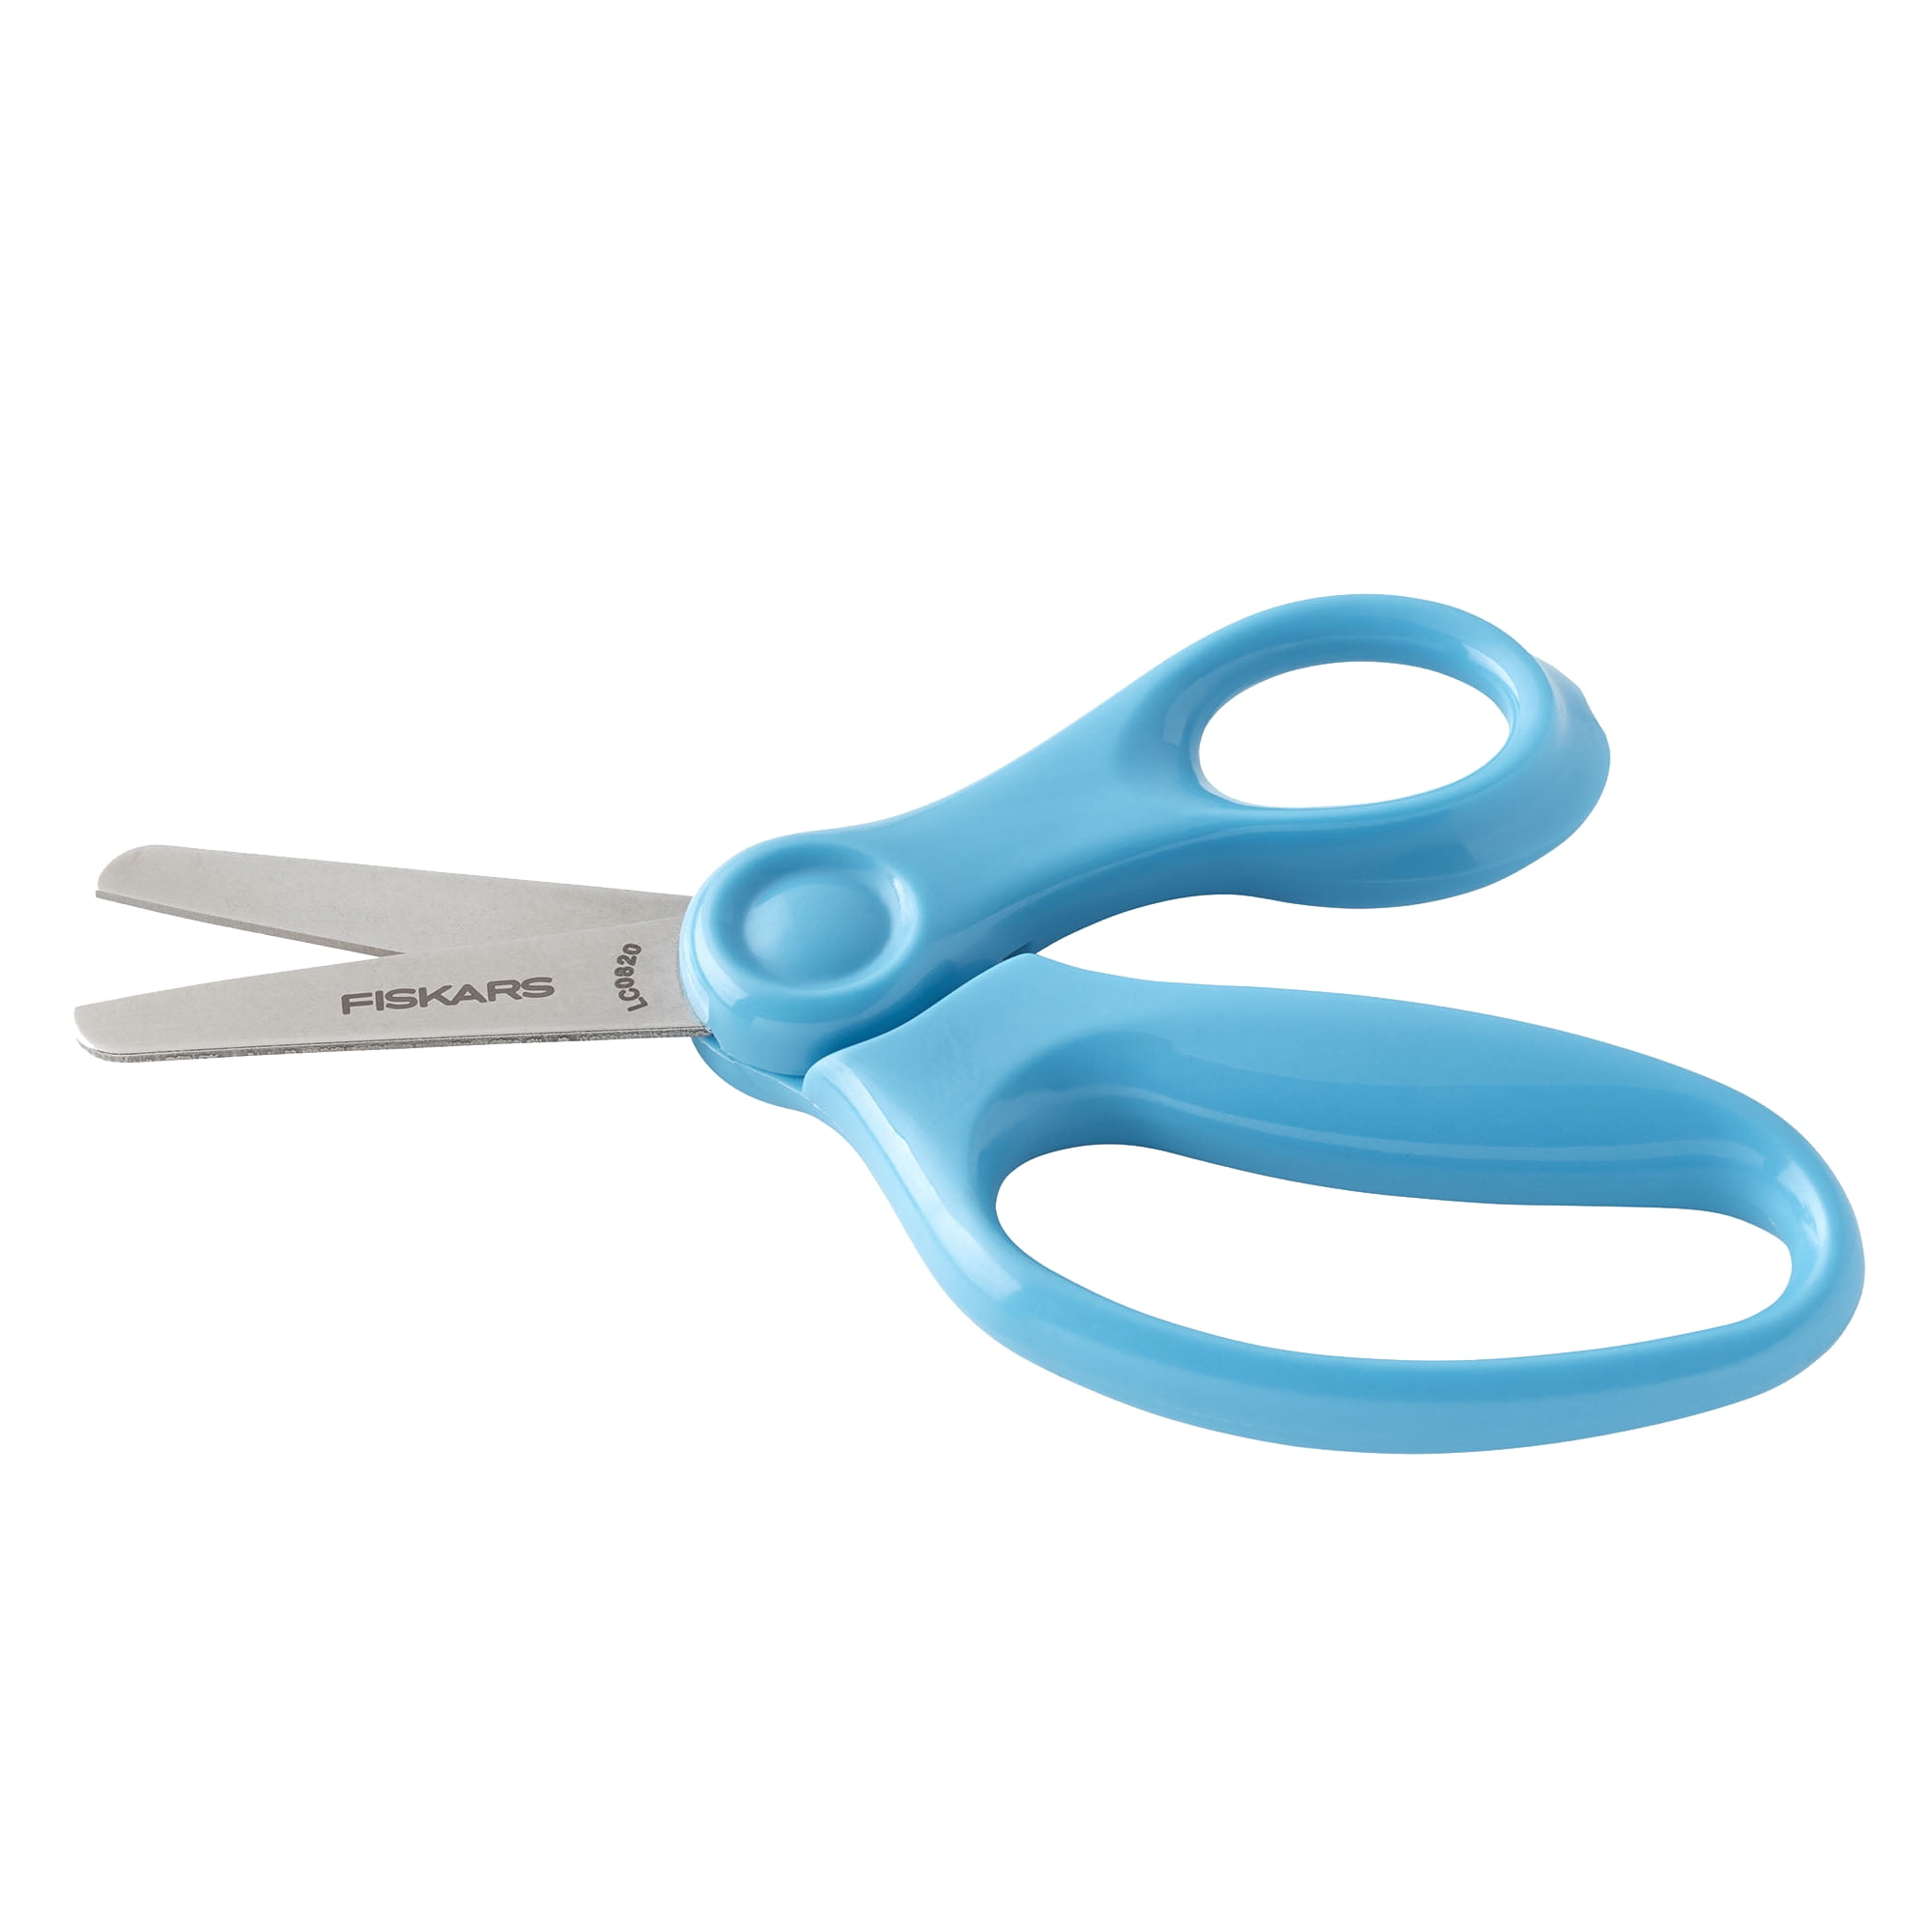 Blunt Tip Children's Scissors, $3.00 - $3.99